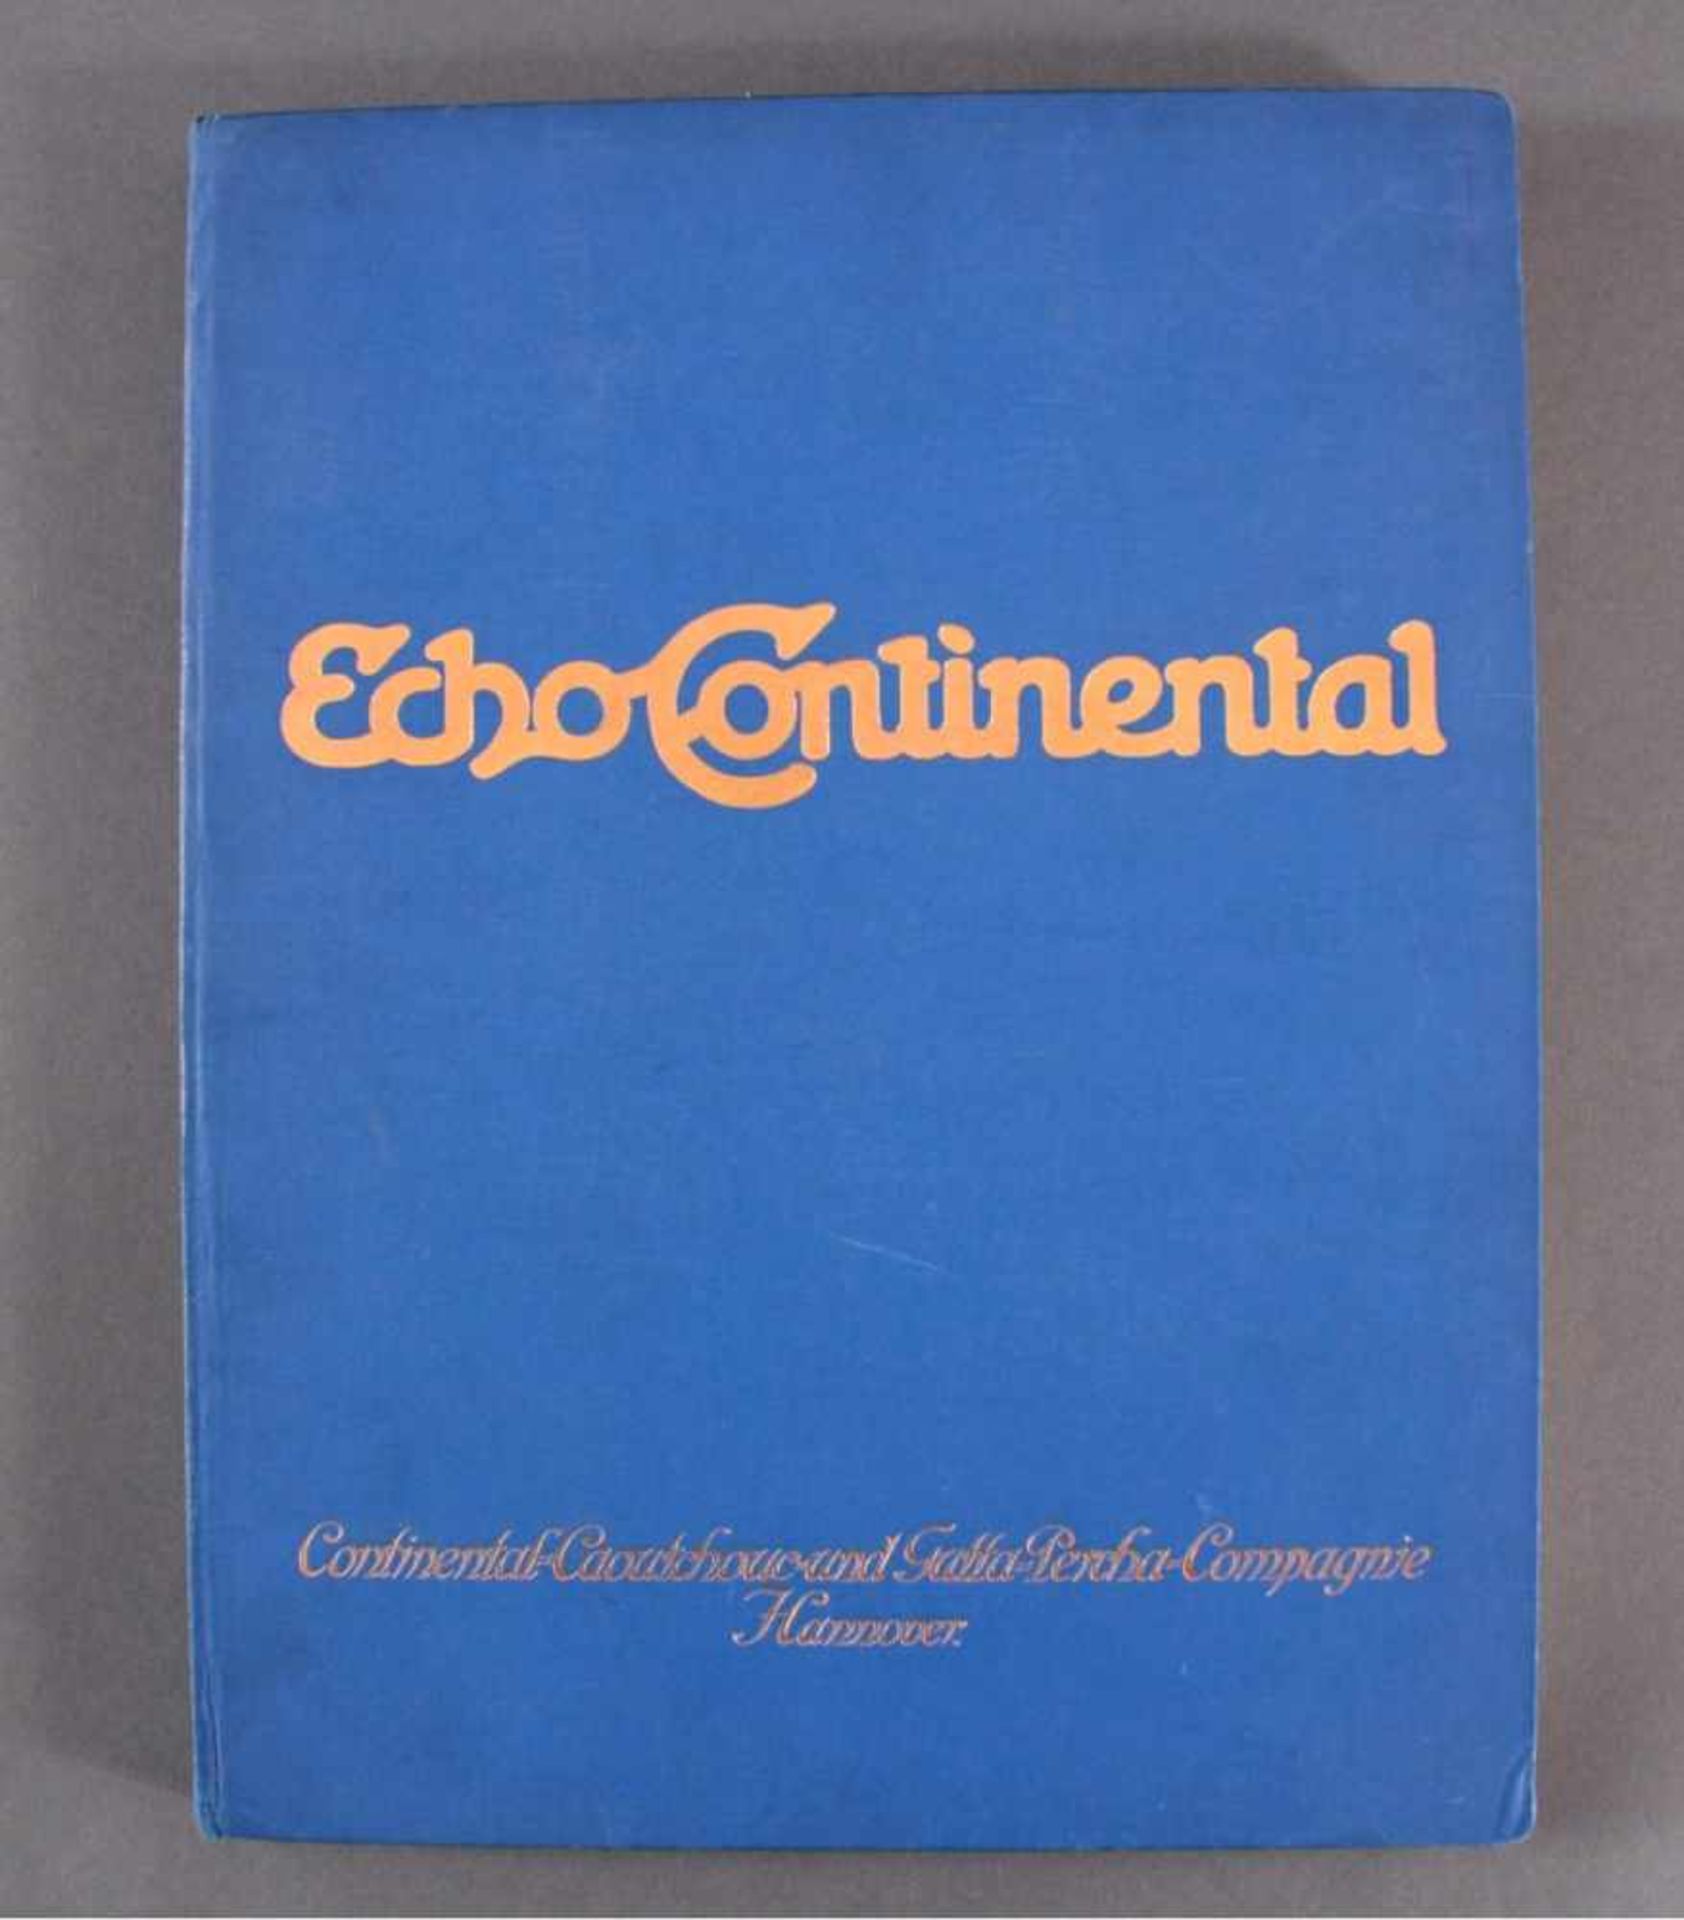 Echo Continental Jahrgang 1928Caoutschouc-Compagnie GmbH Hannover, Abbildungen und Textzum Thema